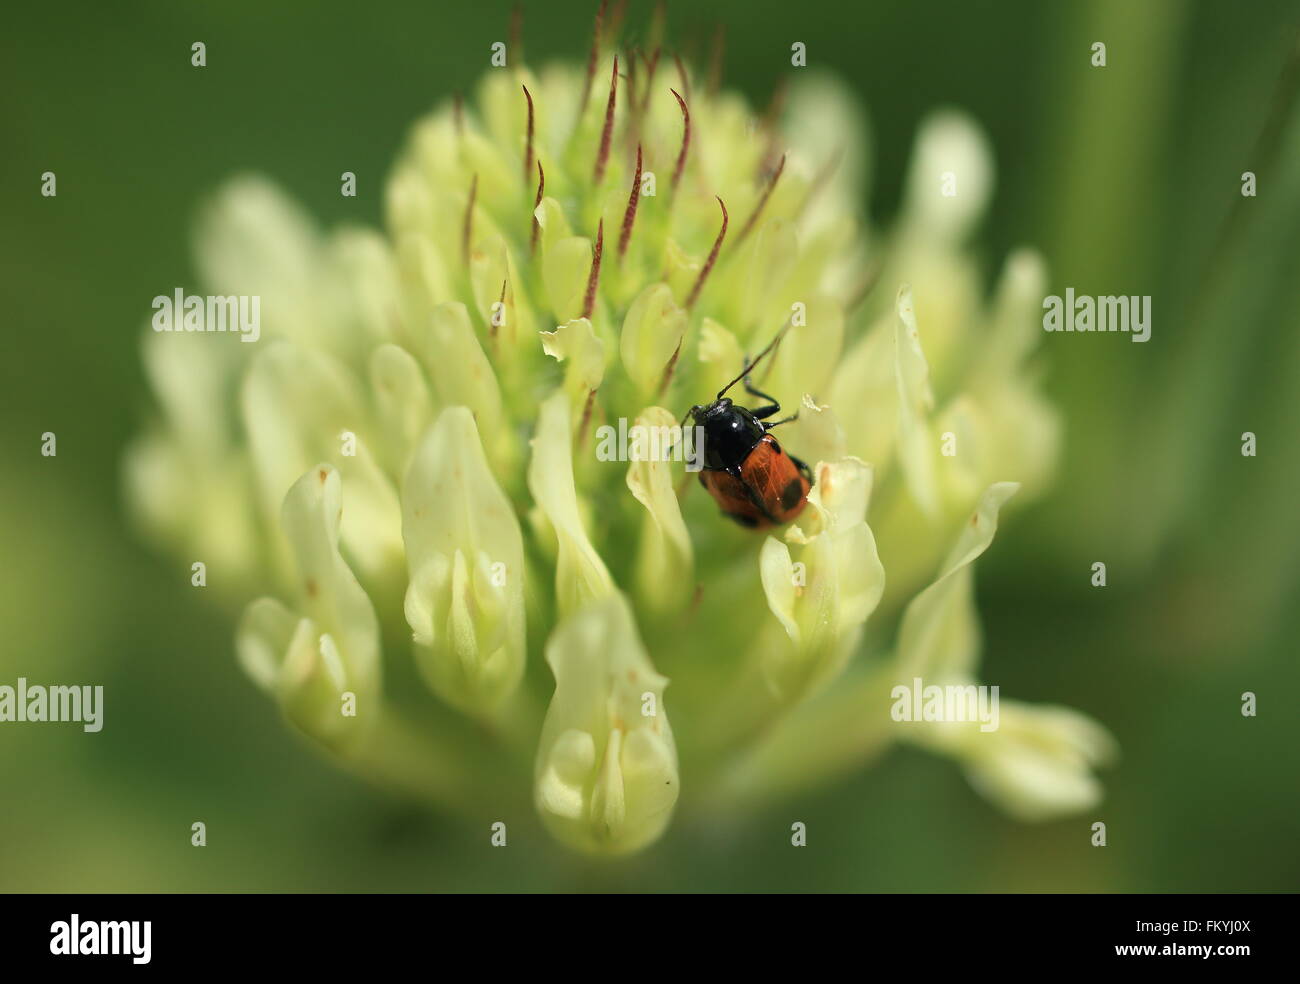 Bug on Flower - Macro Photography Stock Photo